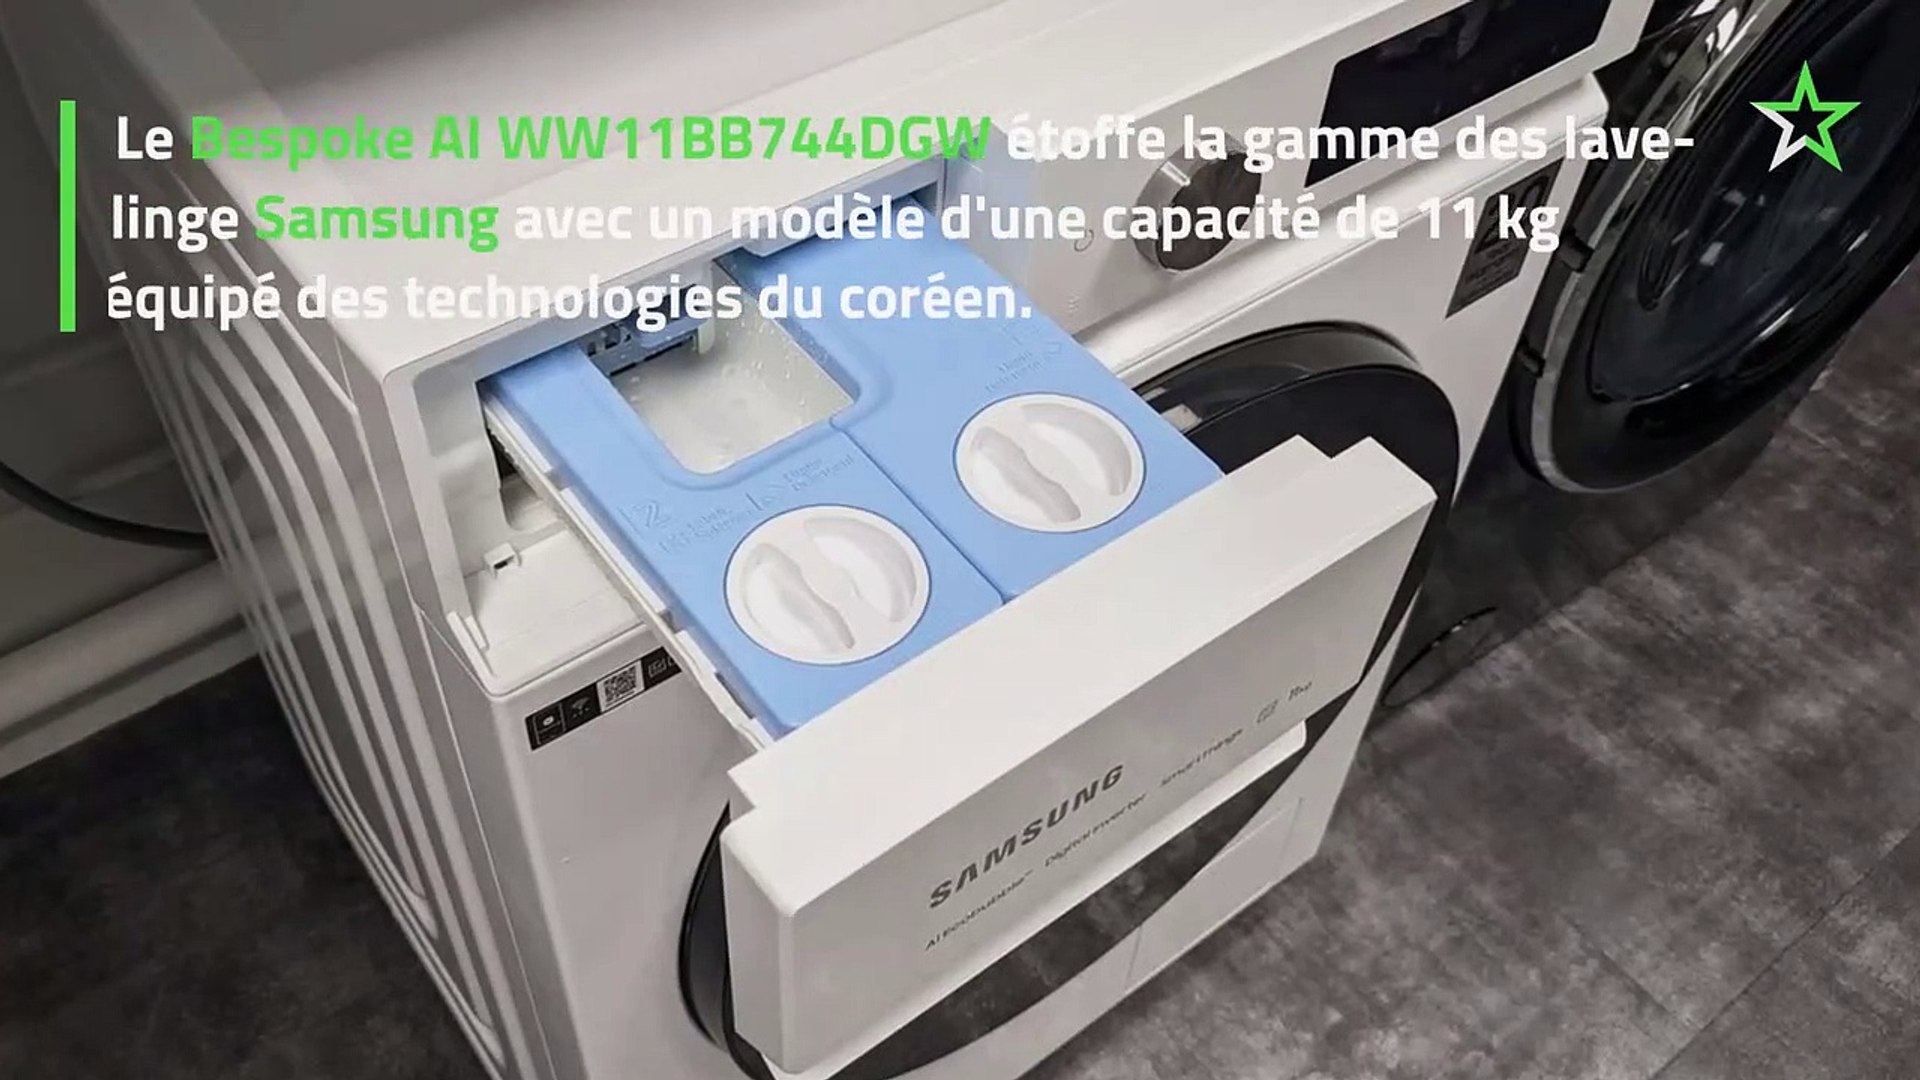 Test Lave-linge Samsung Bespoke AI WW11BB744DGW : l'ami des peaux délicates  - Vidéo Dailymotion